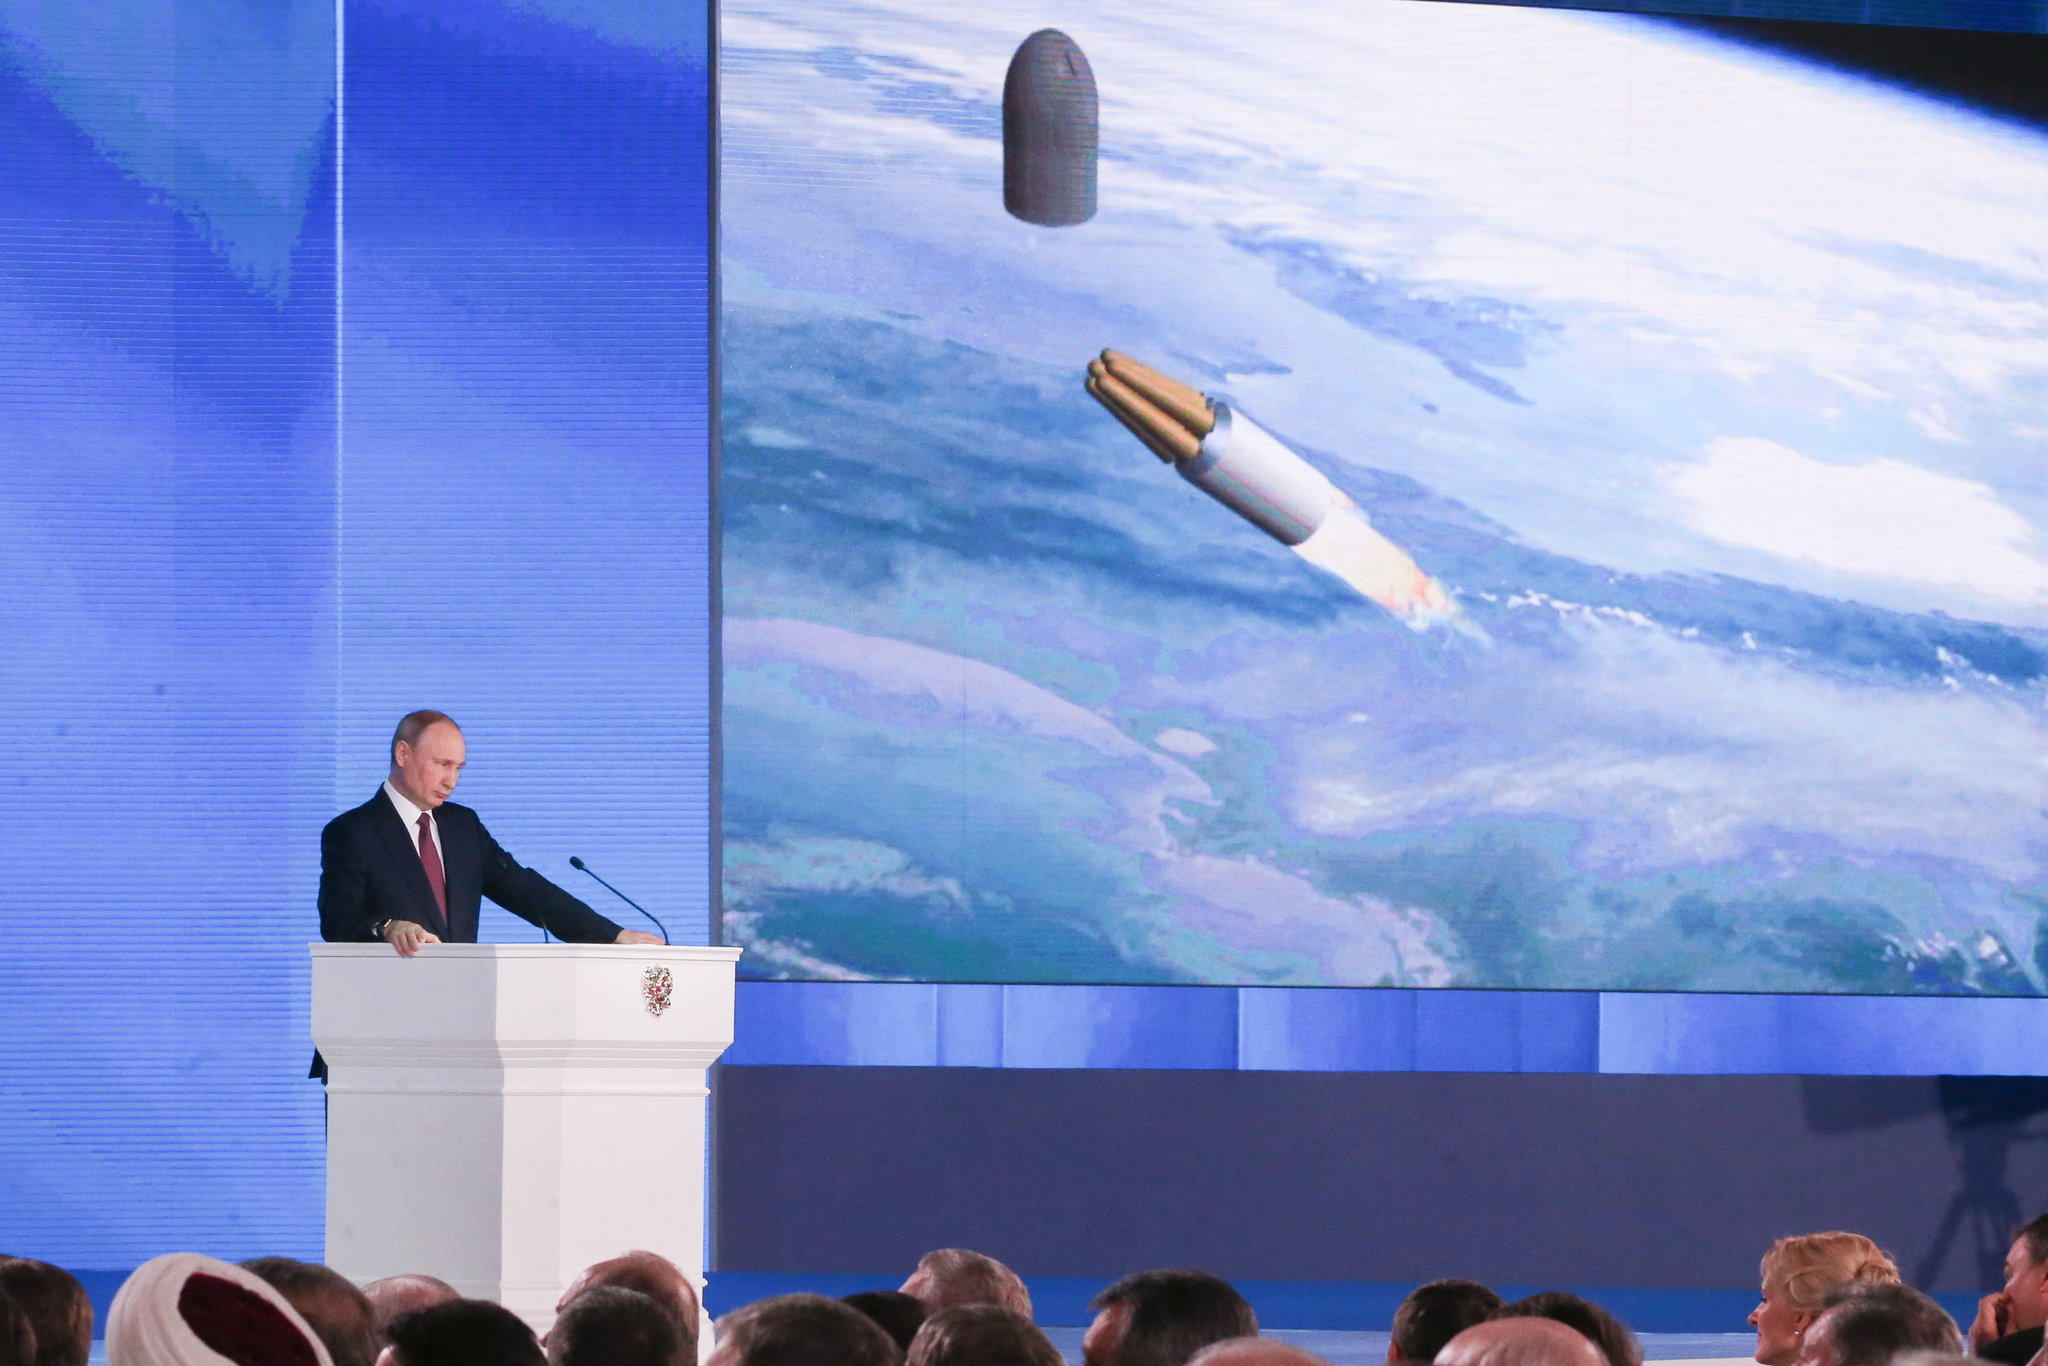 Raketa na jedreski pogon in Vladimir Putin